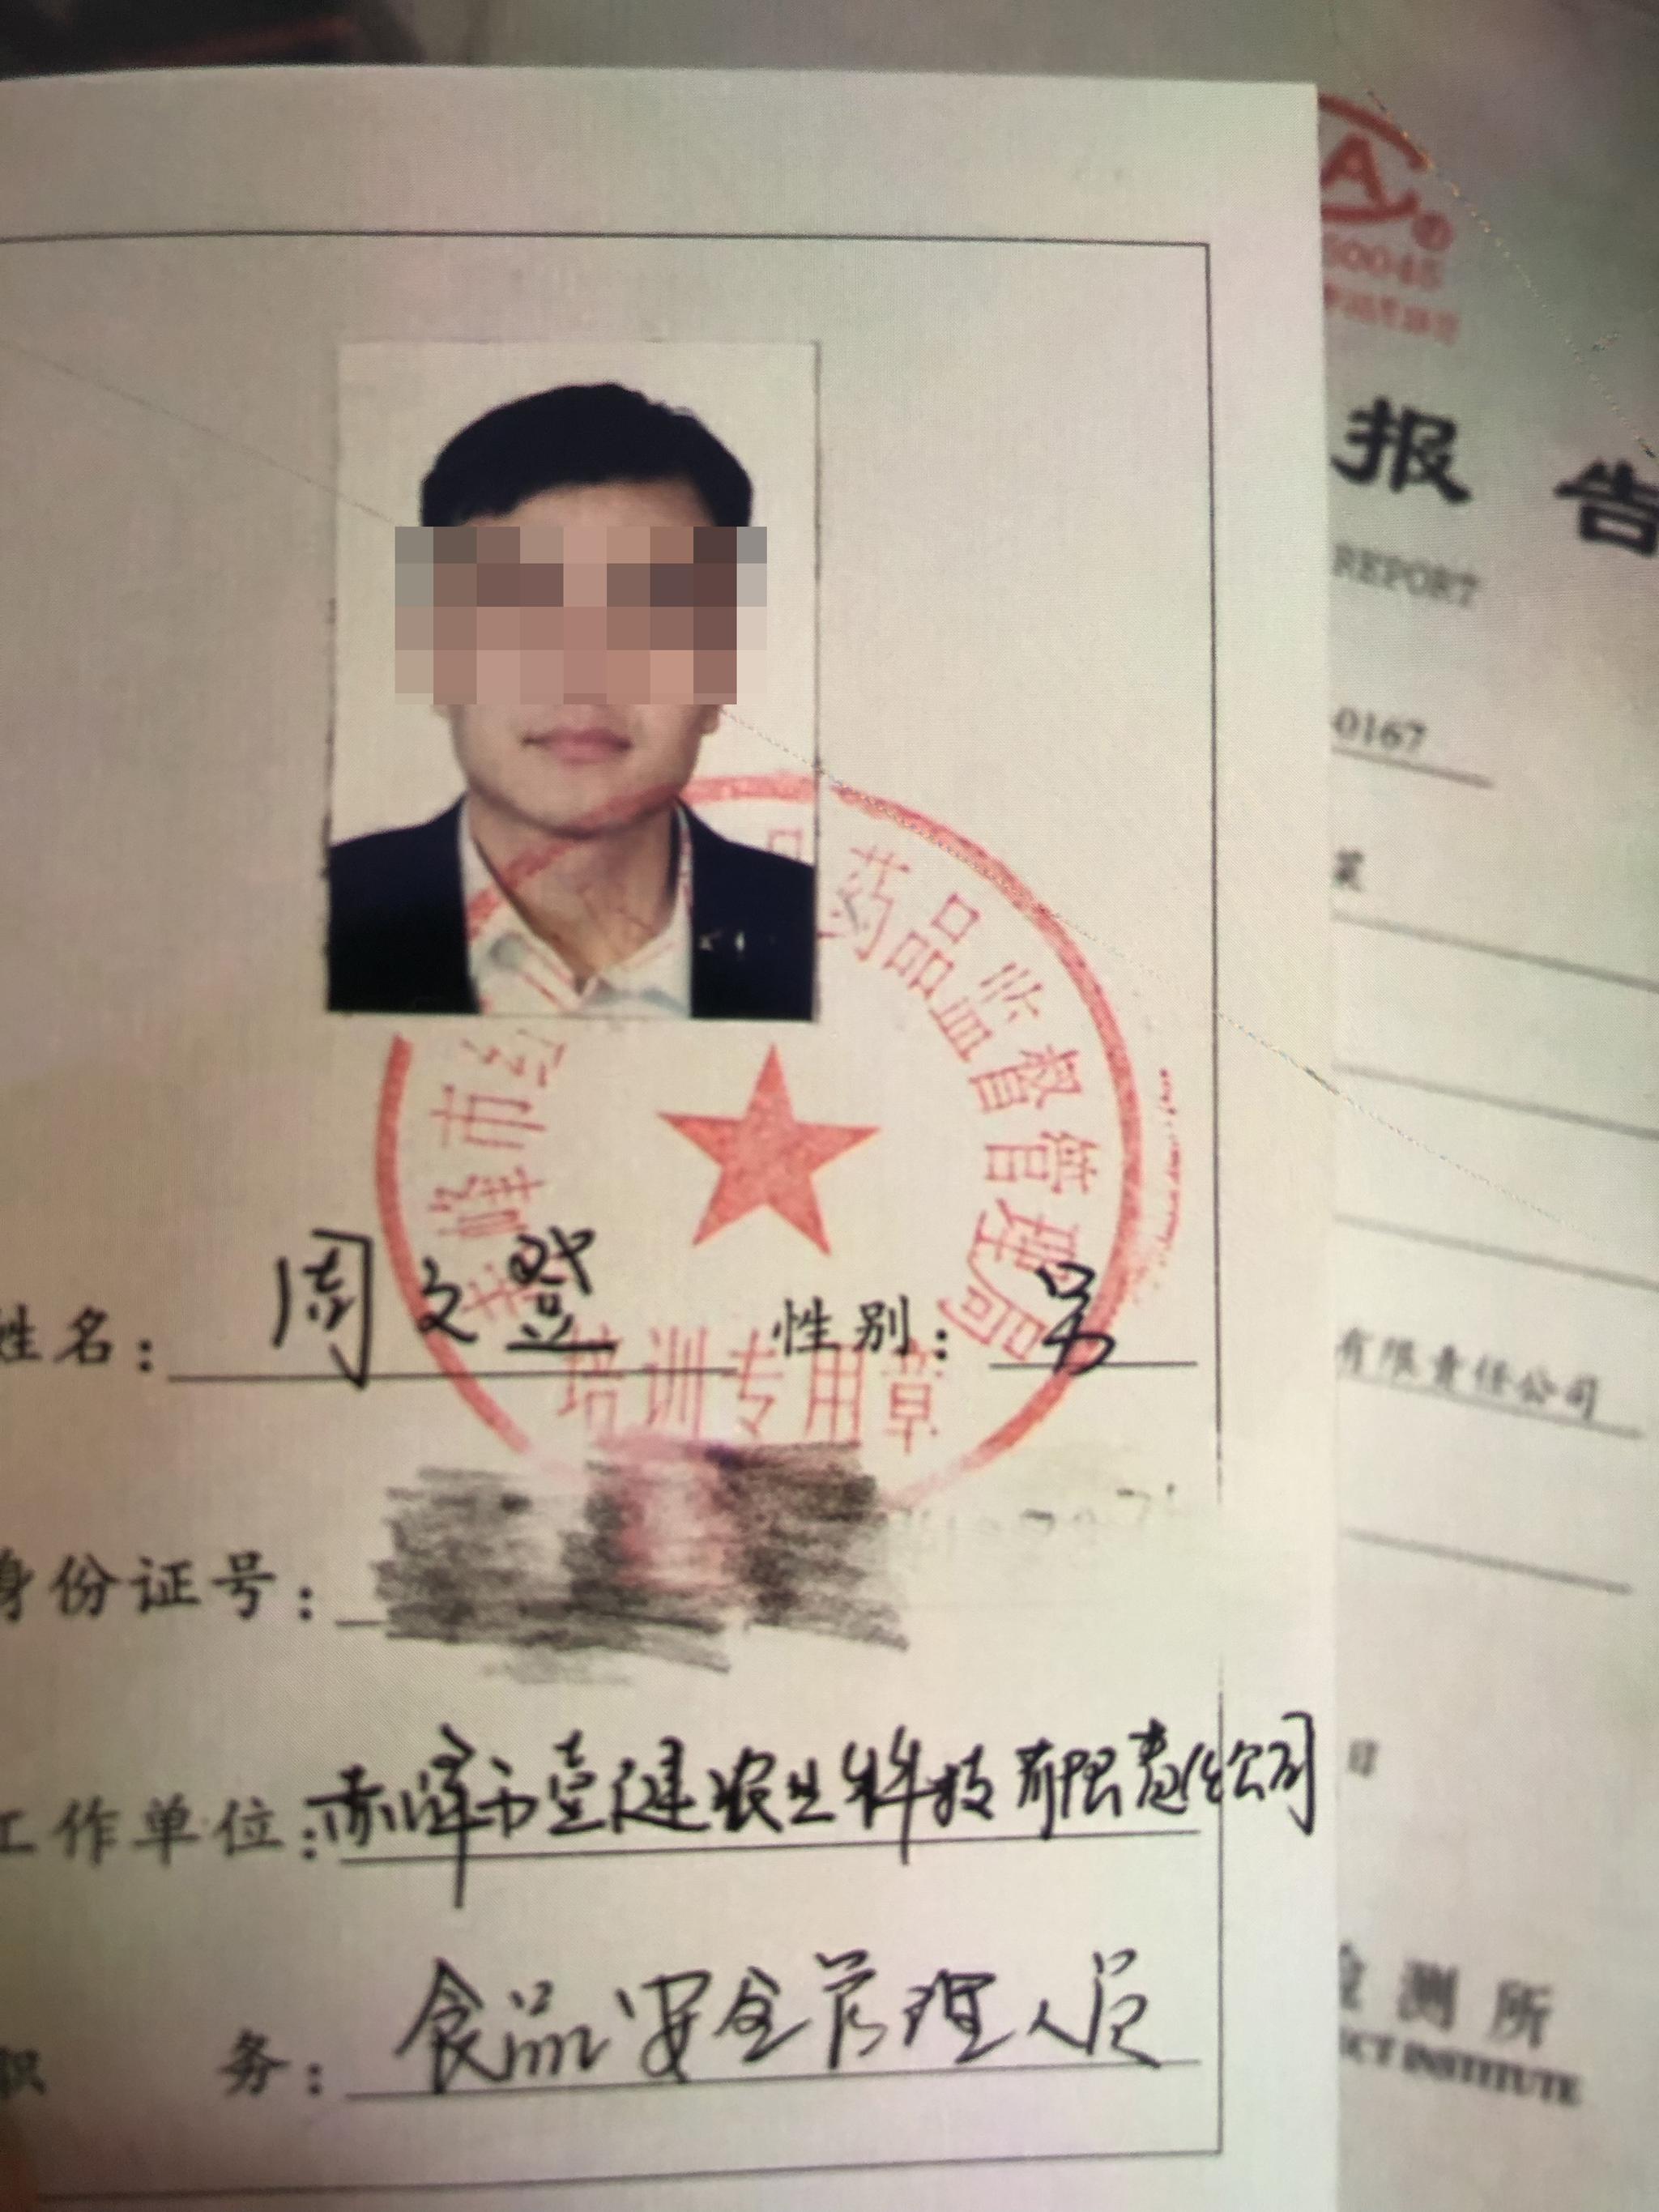 周文登发在朋友圈的证件照片，他曾注册成立了赤峰市壹健农业科技有限责任公司。 新京报记者 向凯 摄